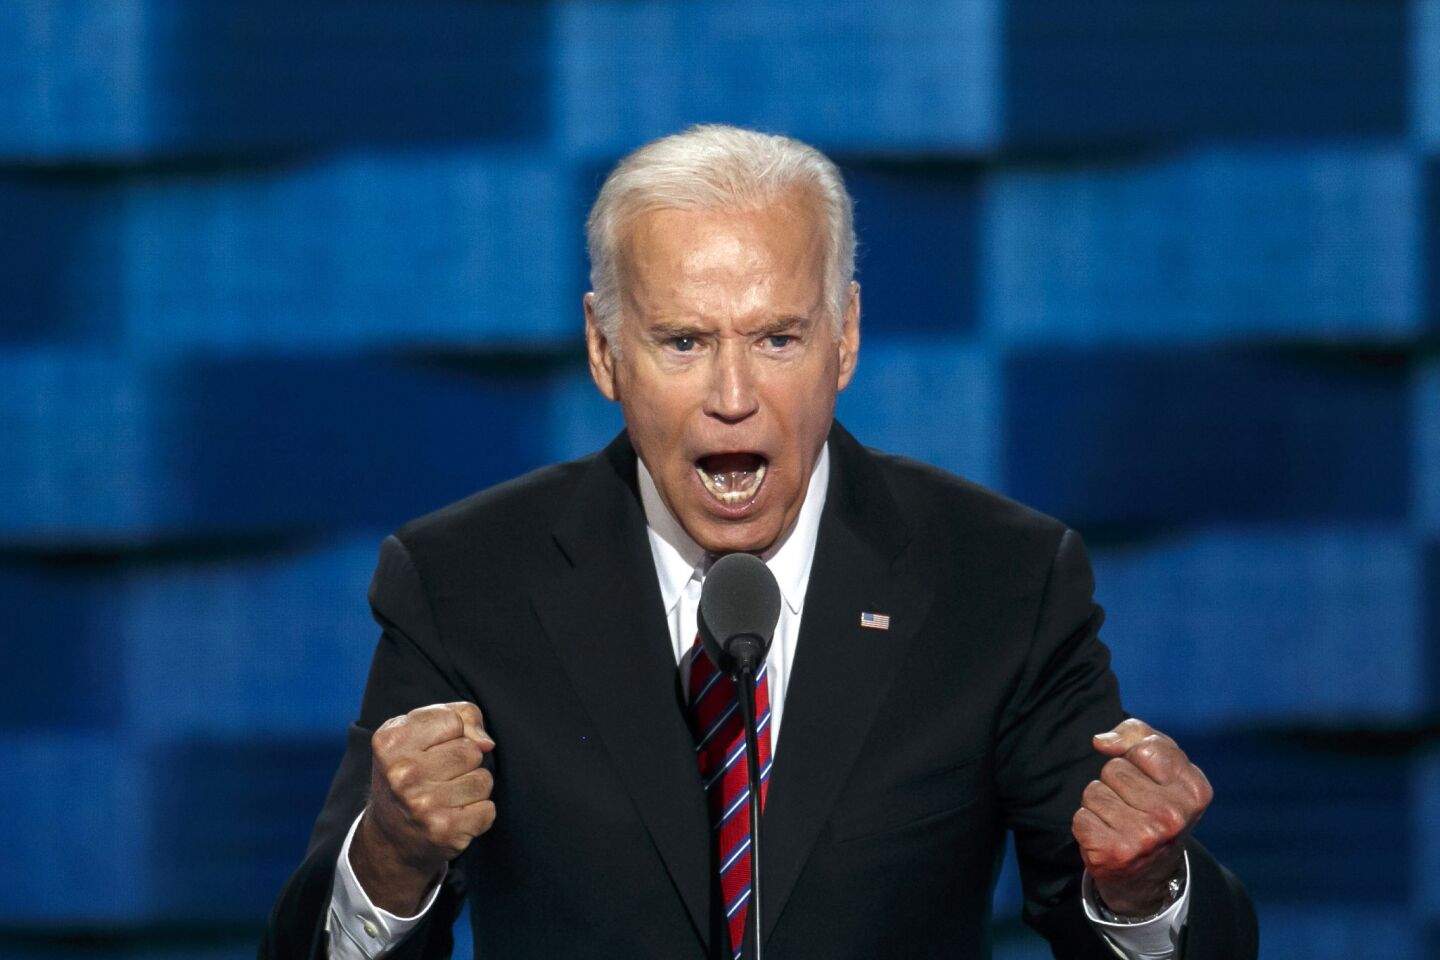 Vice President Joe Biden.